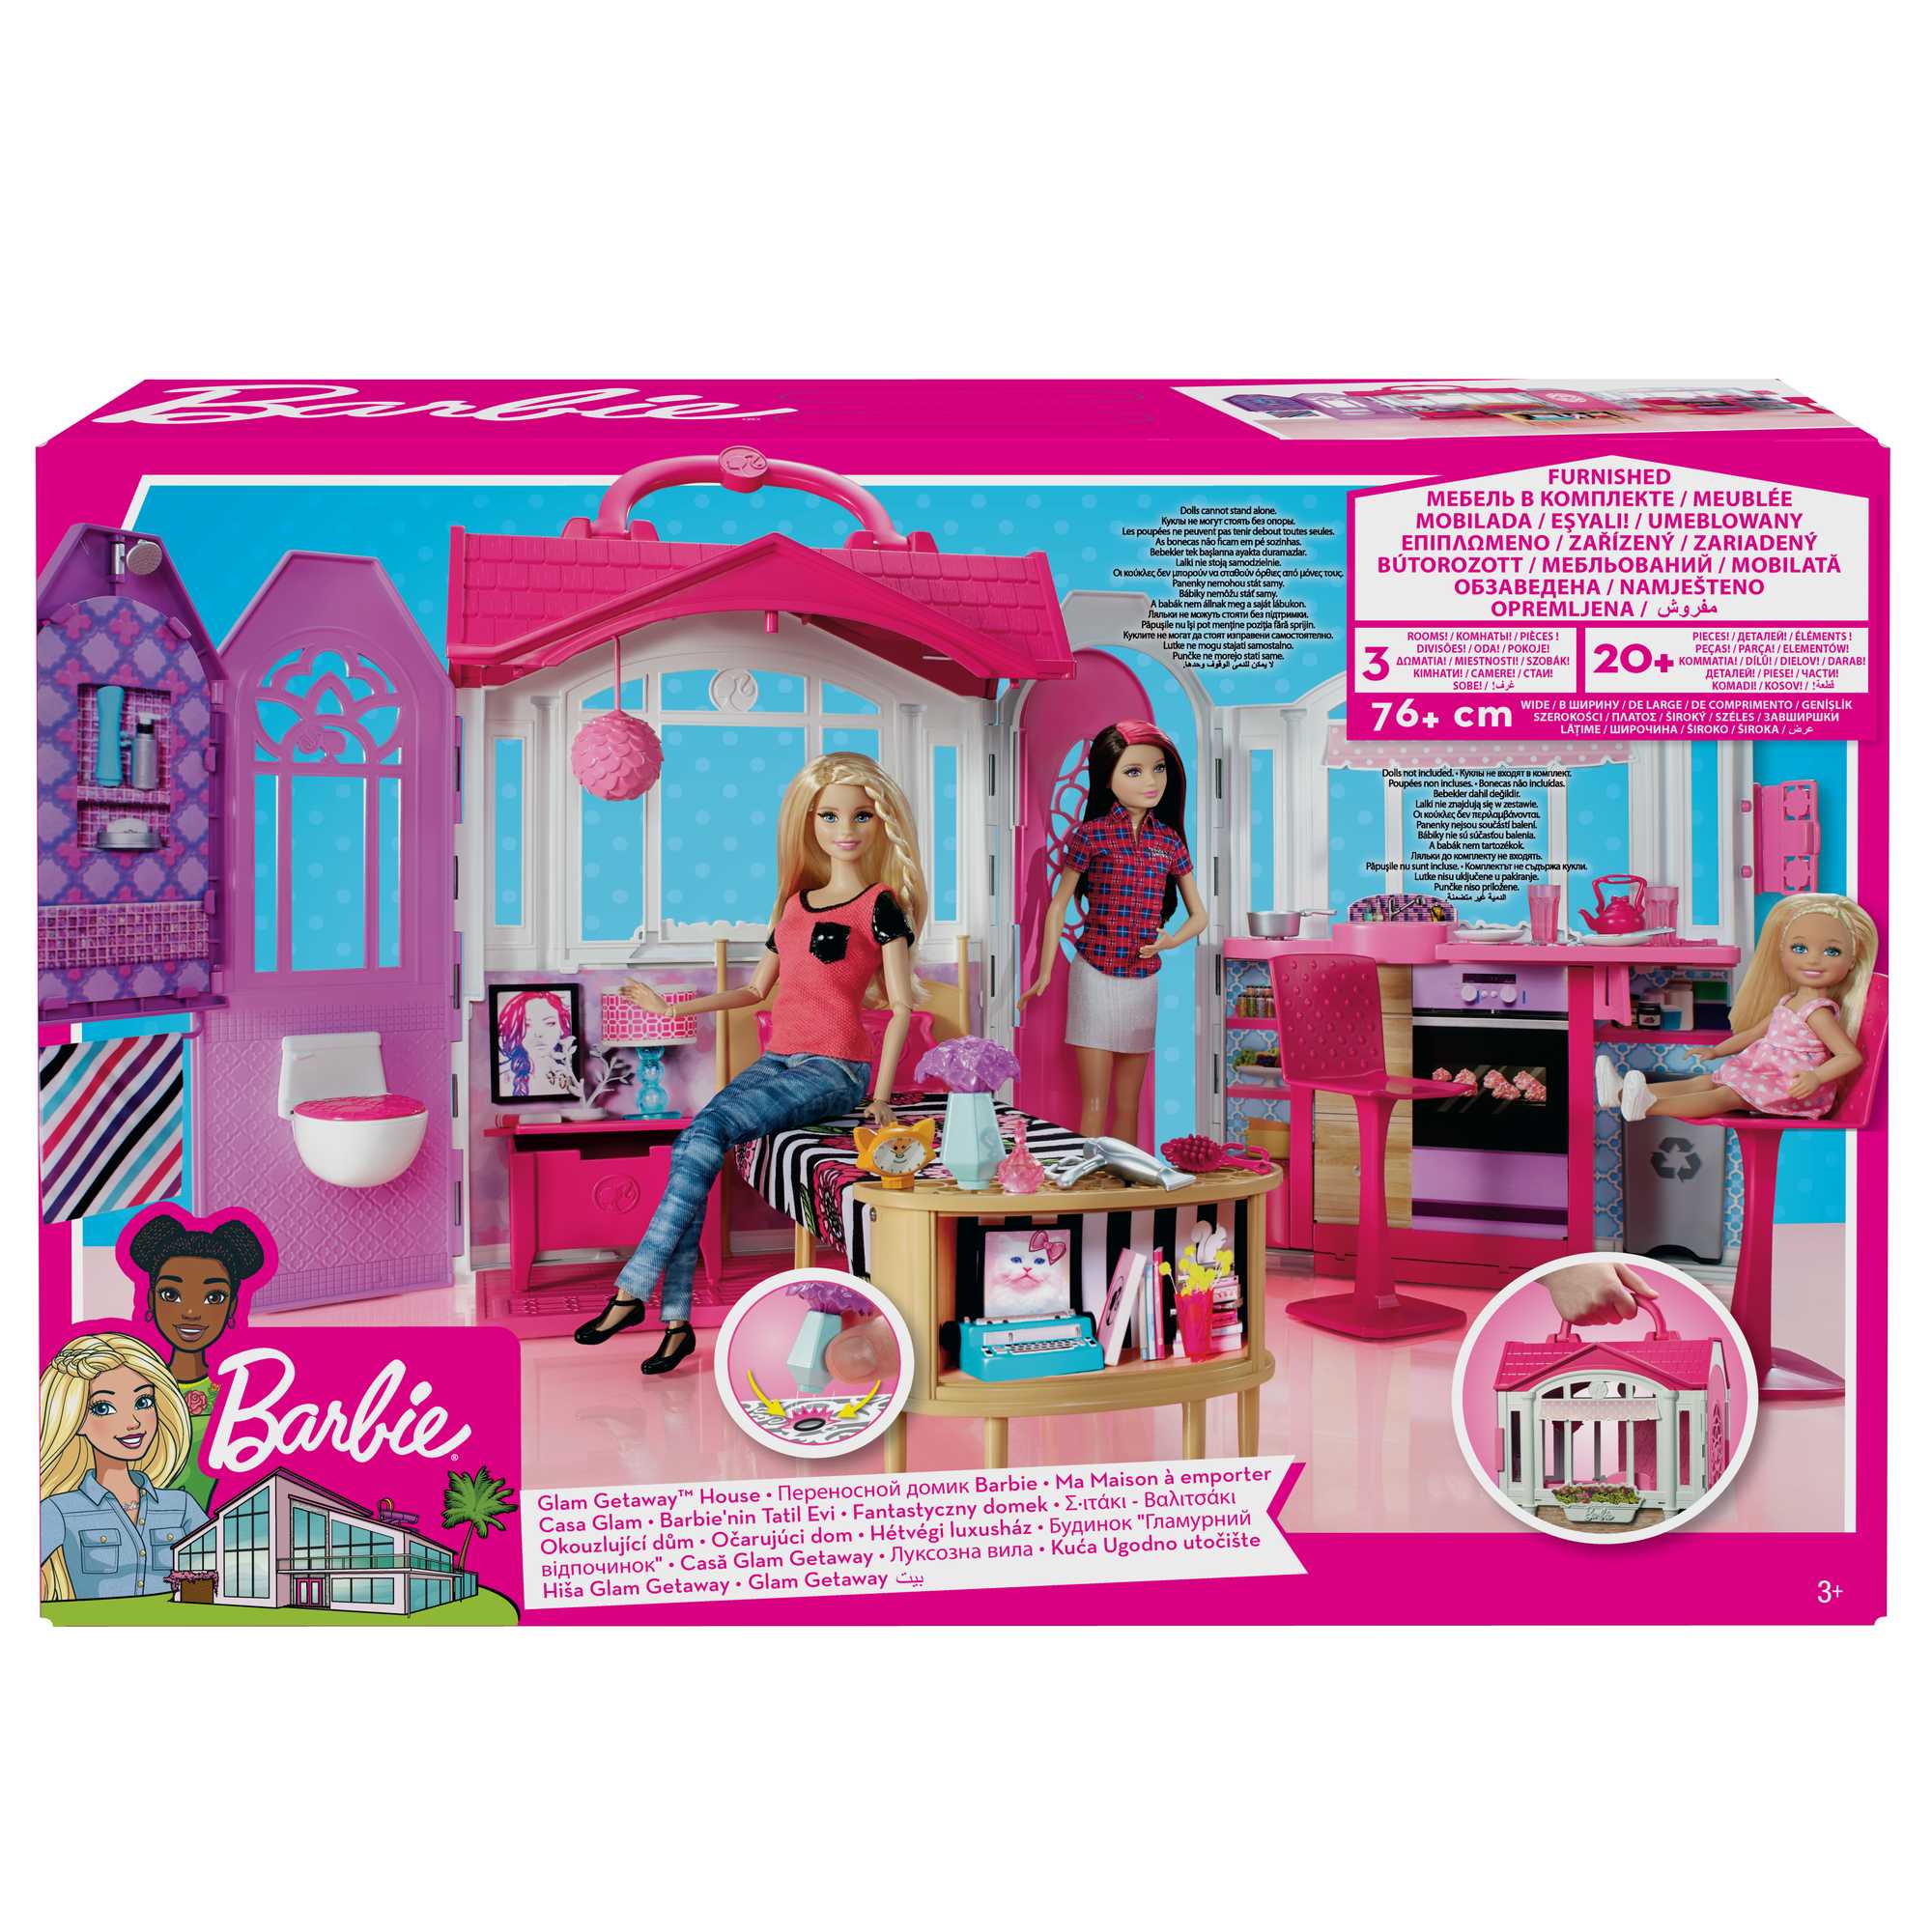 vlotter Potentieel Lauw Barbie Glam Getaway House | Mattel